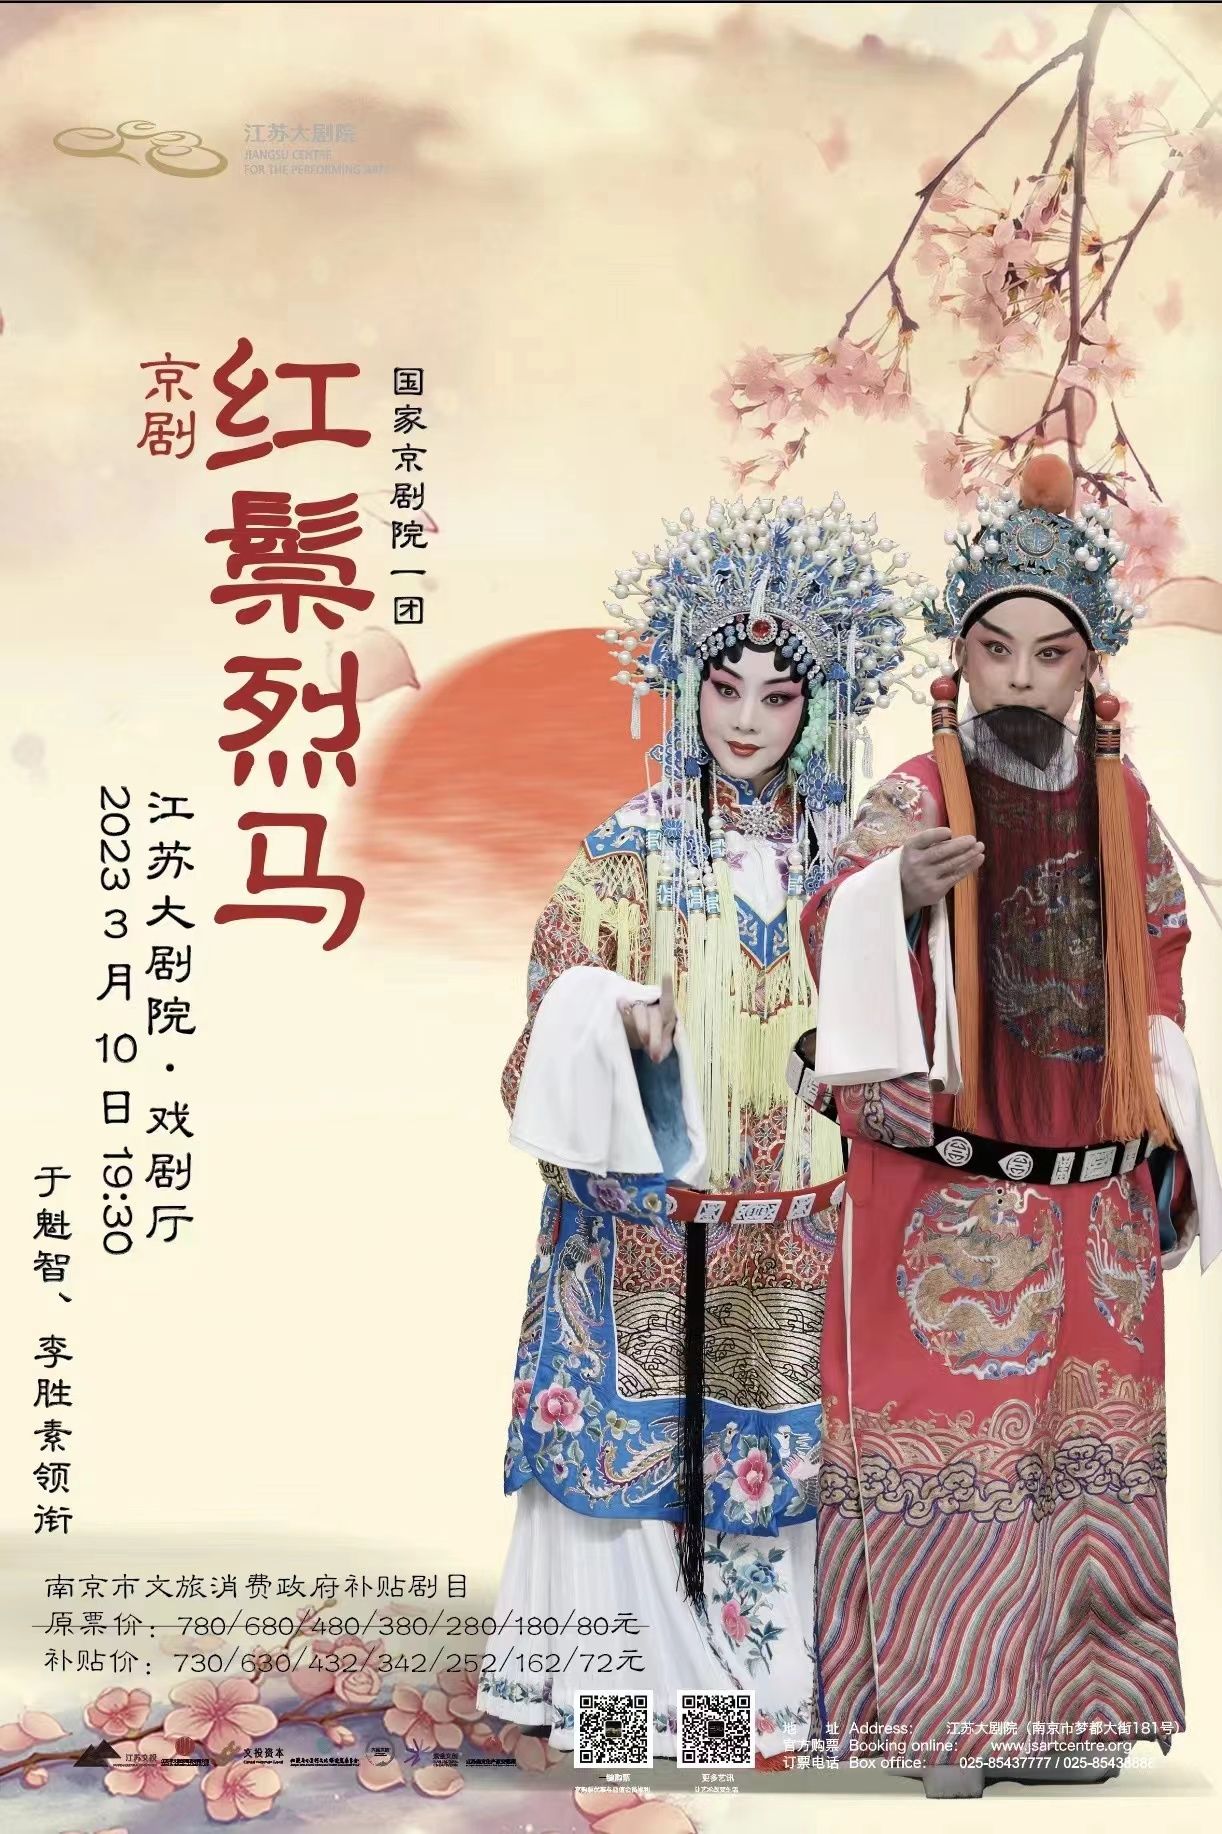 于魁智、李胜素领衔 国家京剧院一团经典剧目《红鬃烈马》